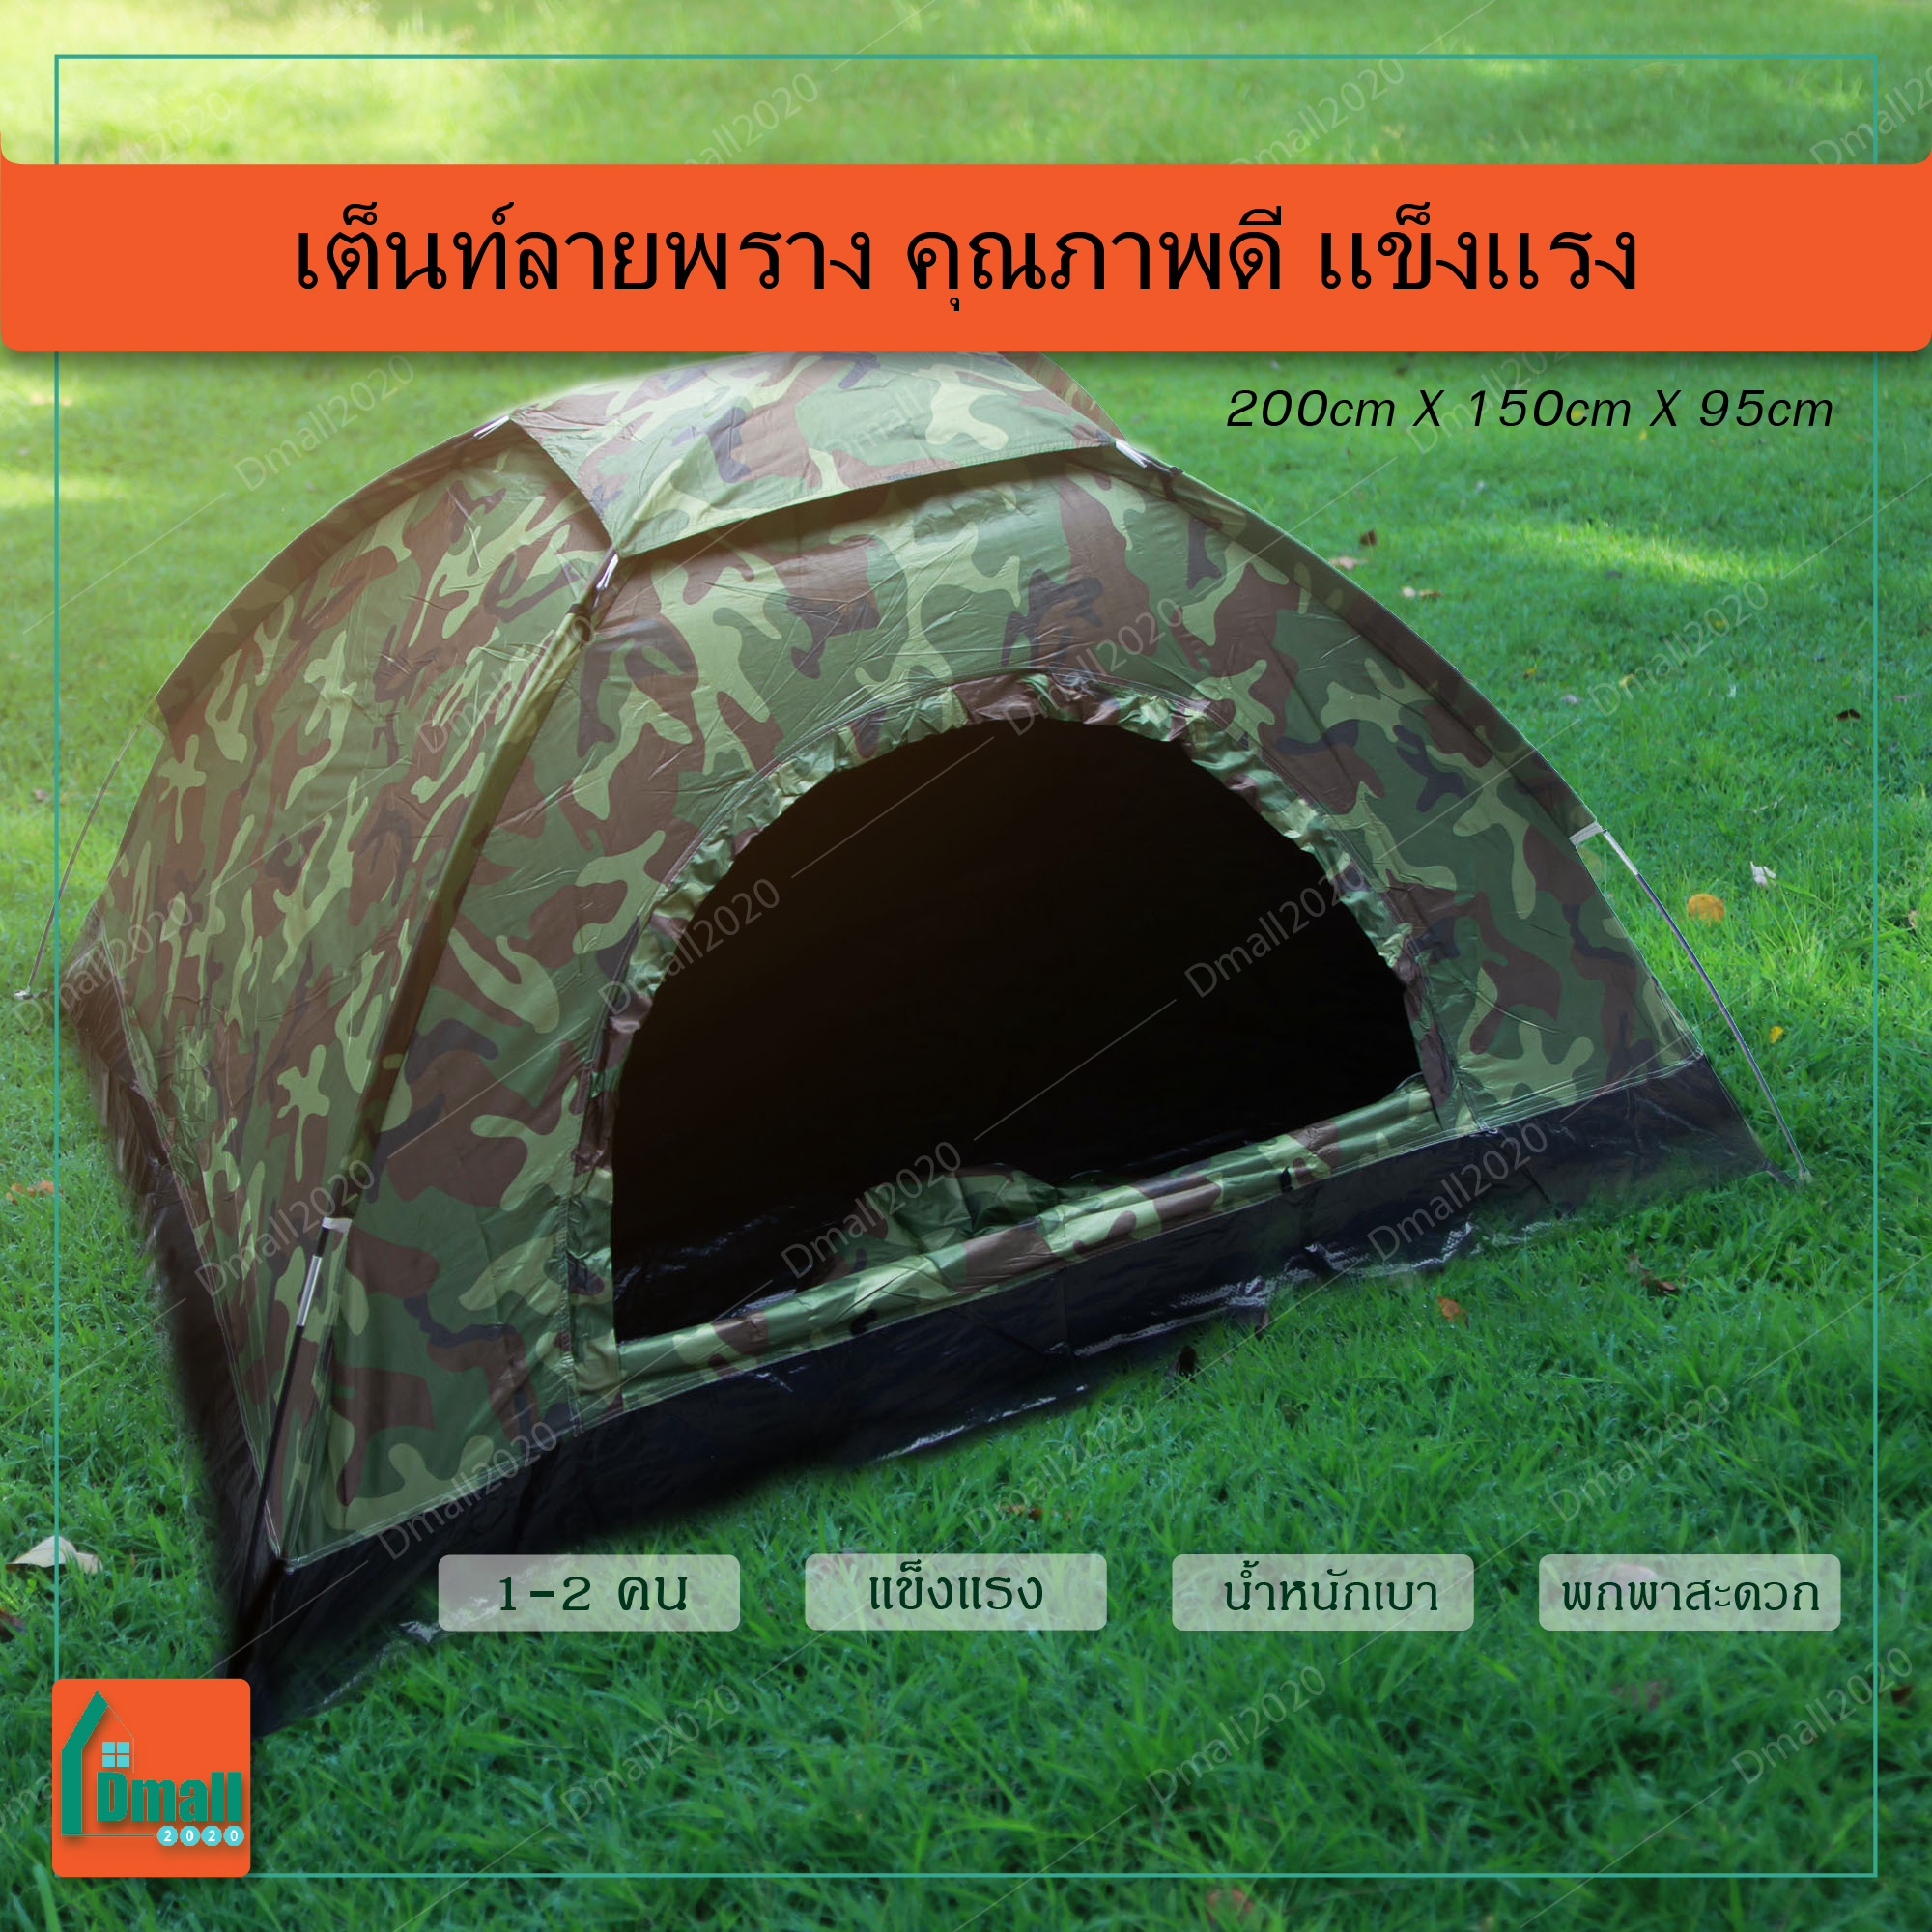 เต็นท์ เต็นท์ลายพราง เต็นท์สนาม เต็นท์ลายทหาร ขนาด 2.0x1.5 เมตร นอน 1-2 คน คุณภาพดี แข็งแรง, Camouflage pattern tent size 2.0x1.5m, For sleeping, 1-2 people